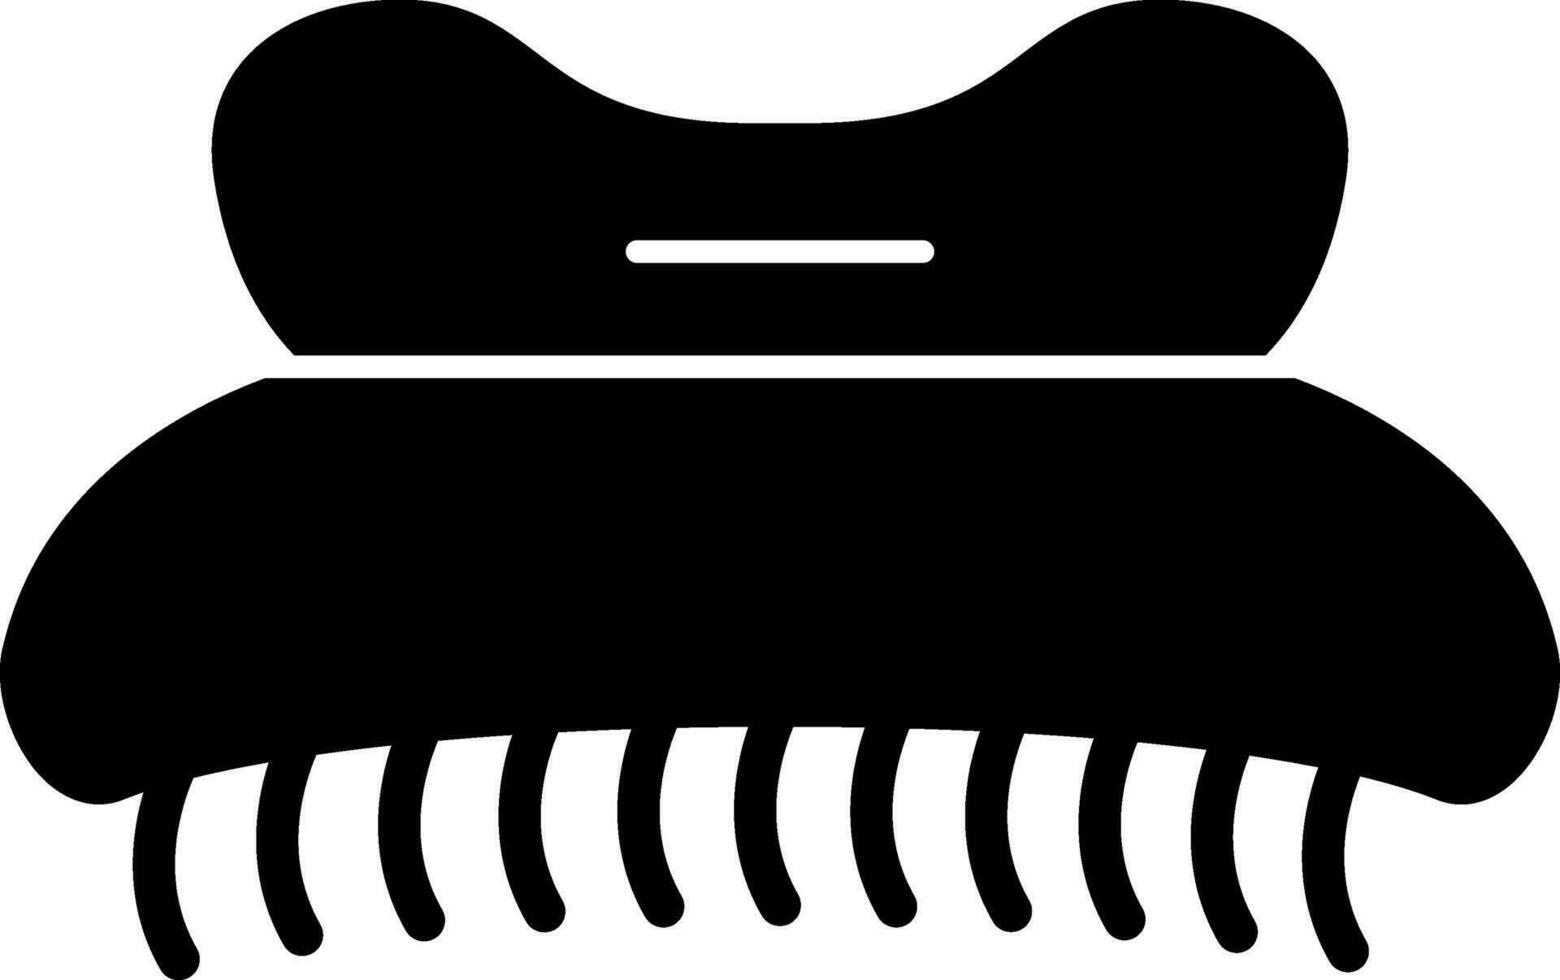 Hair clip Vector Icon Design